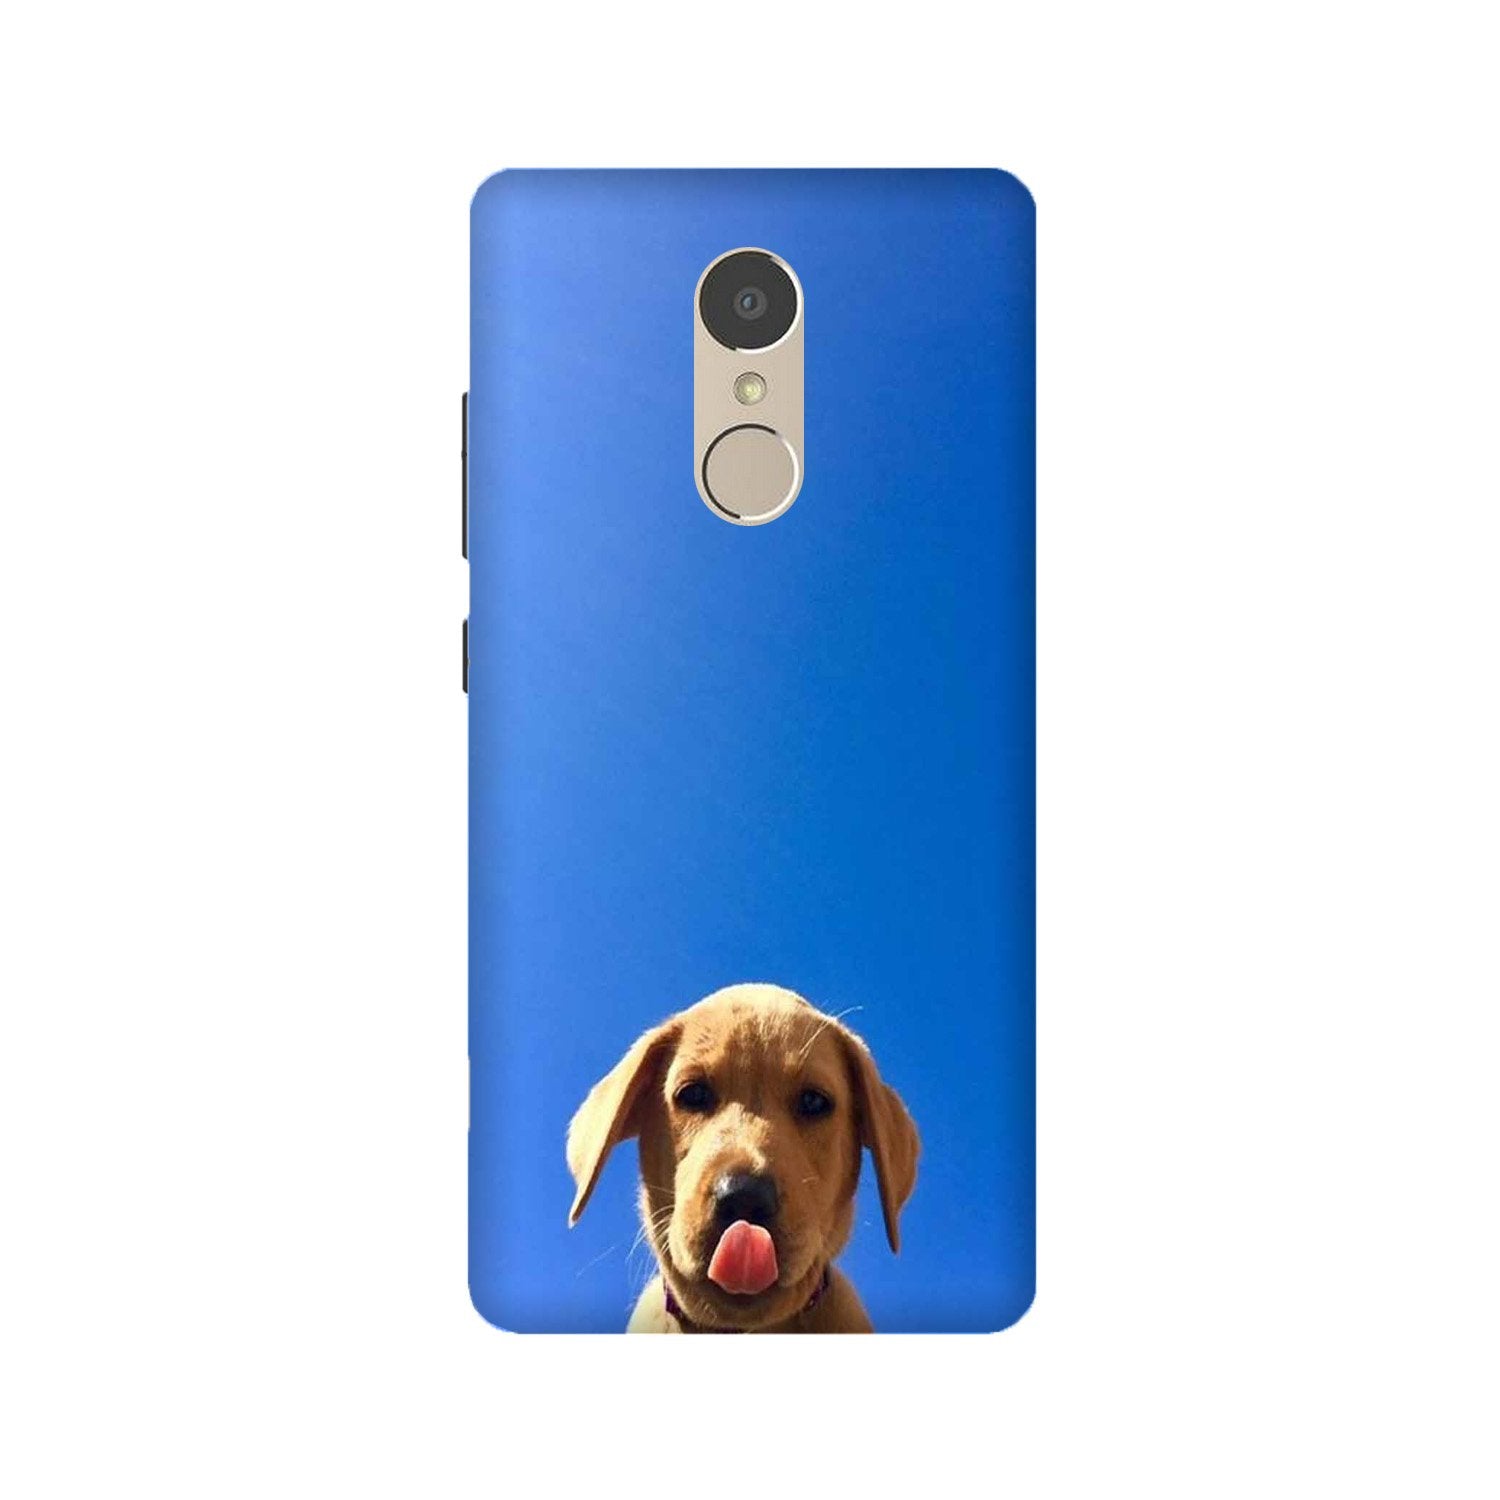 Dog Mobile Back Case for Lenovo K6 / K6 Power (Design - 332)